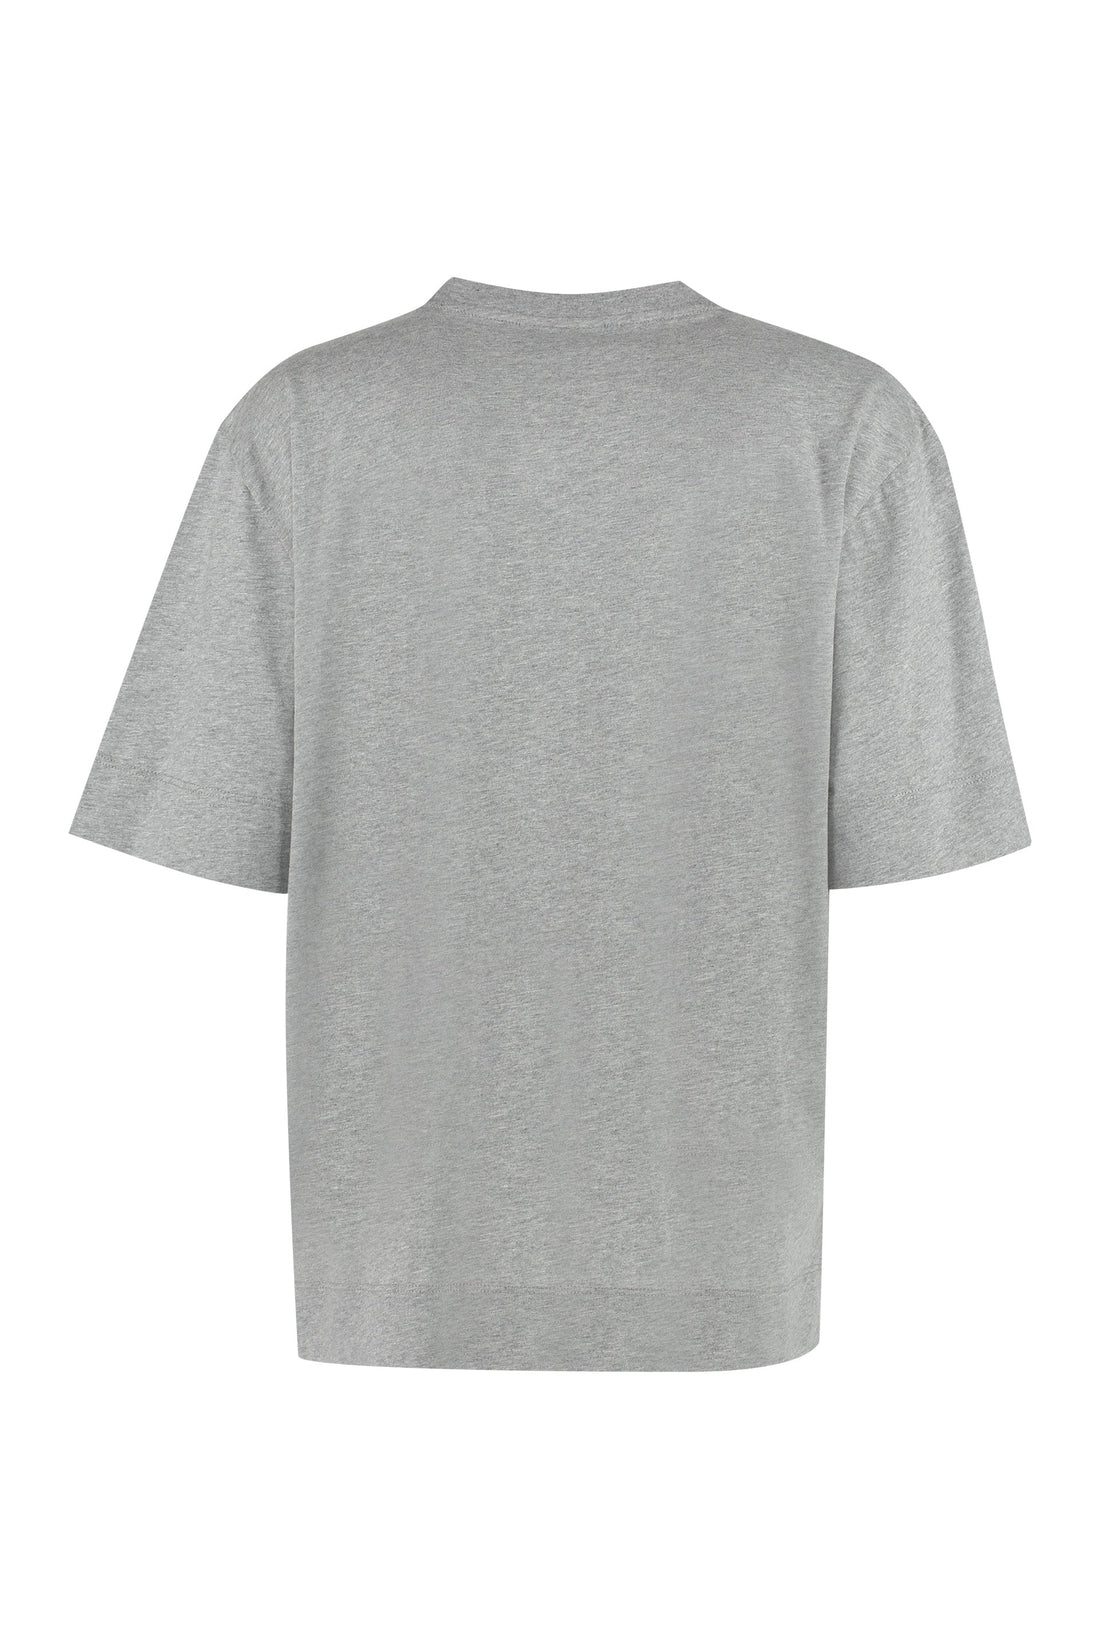 GANNI-OUTLET-SALE-Logo cotton t-shirt-ARCHIVIST